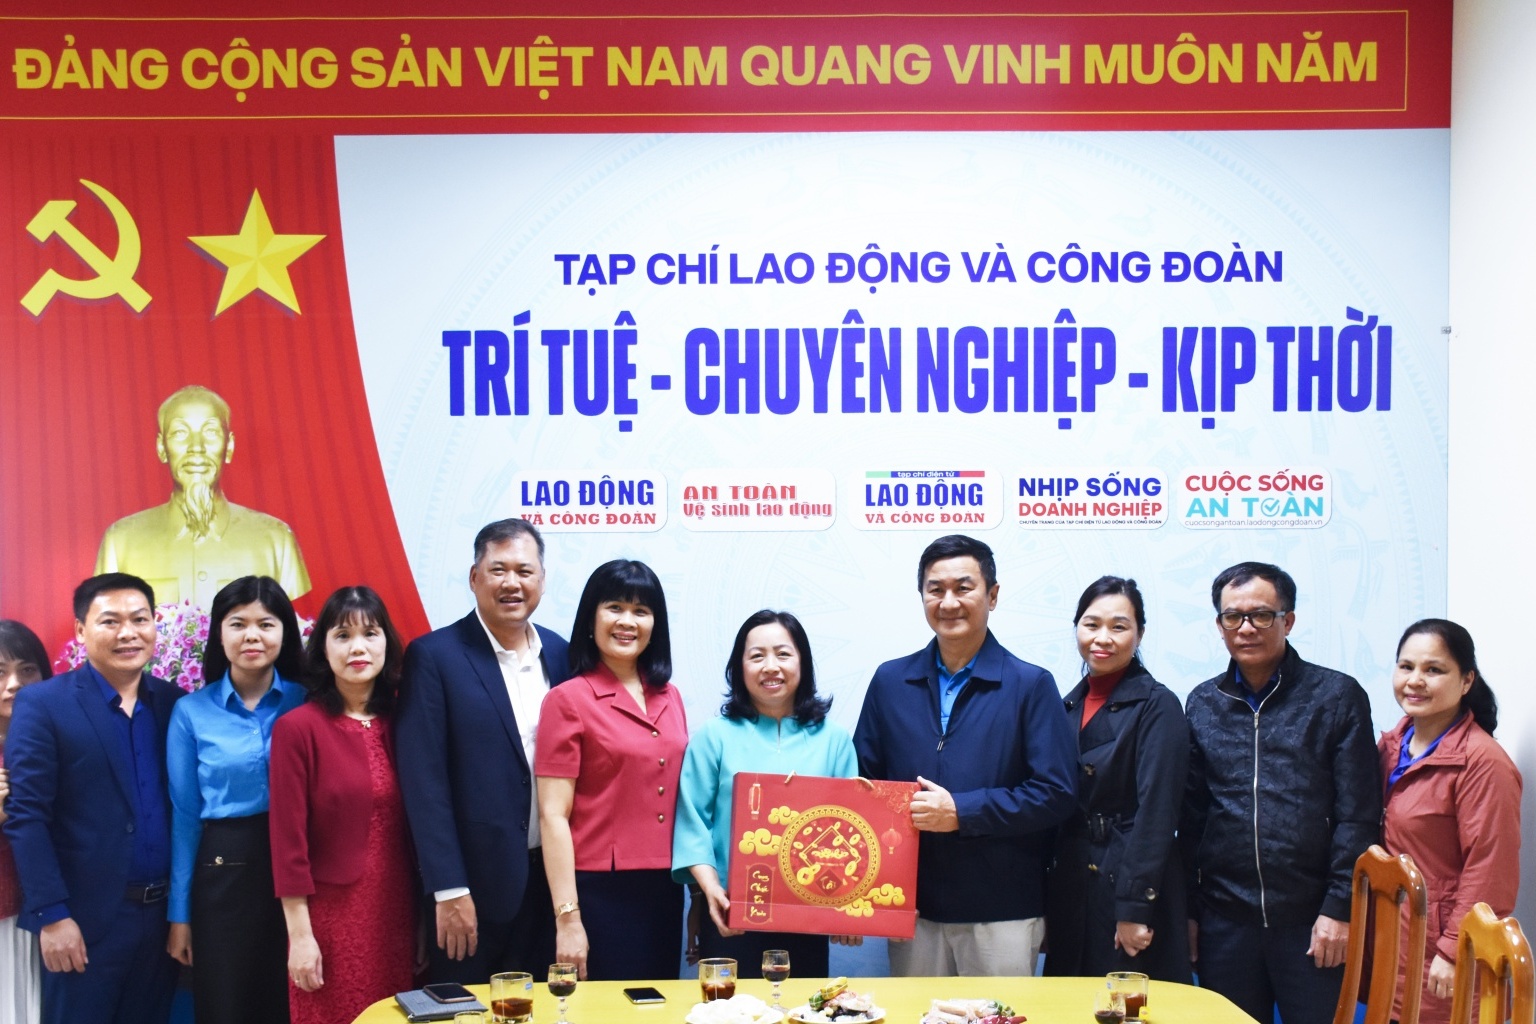 Lãnh đạo Tổng LĐLĐ Việt Nam chúc mừng Tạp chí Lao động và Công đoàn nhân dịp năm mới